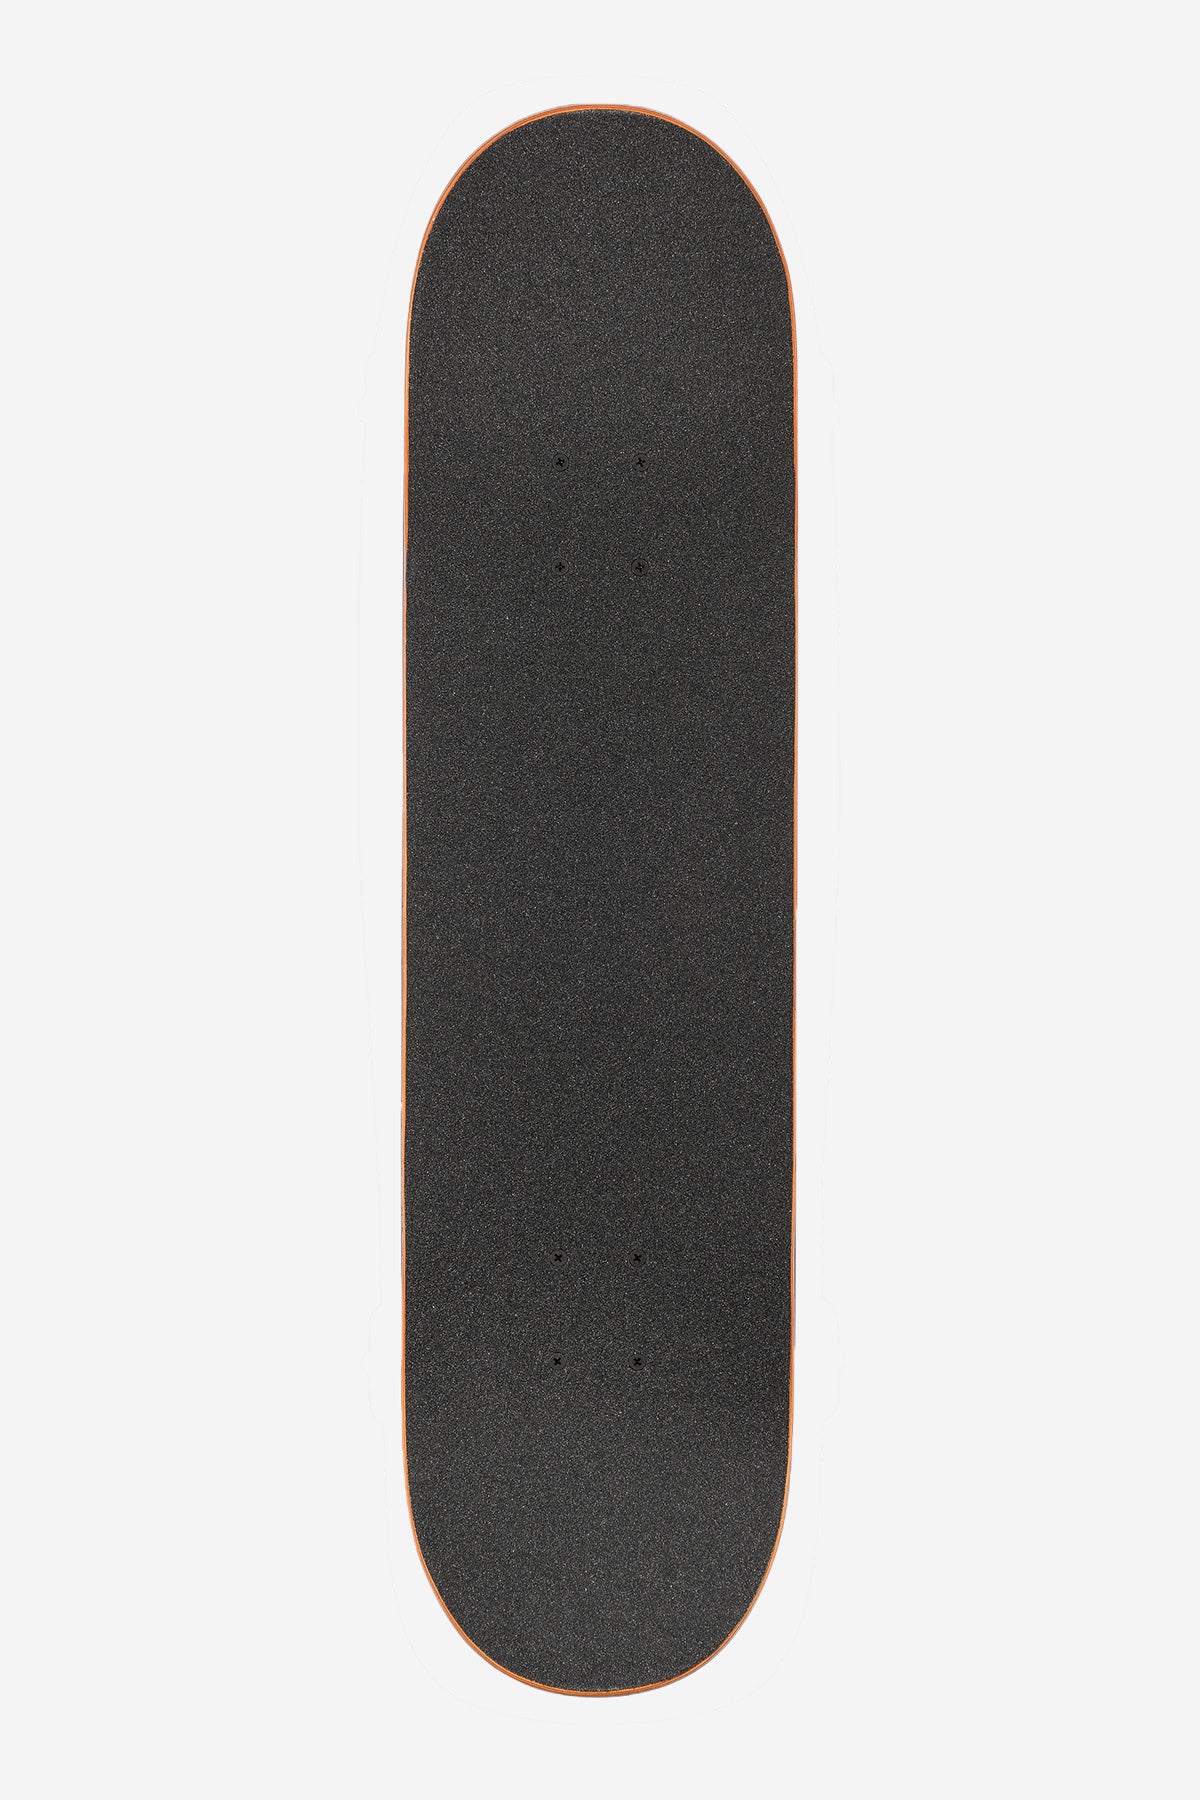 G1 Hard Luck - White/Black - 8.0" Compleet Skateboard